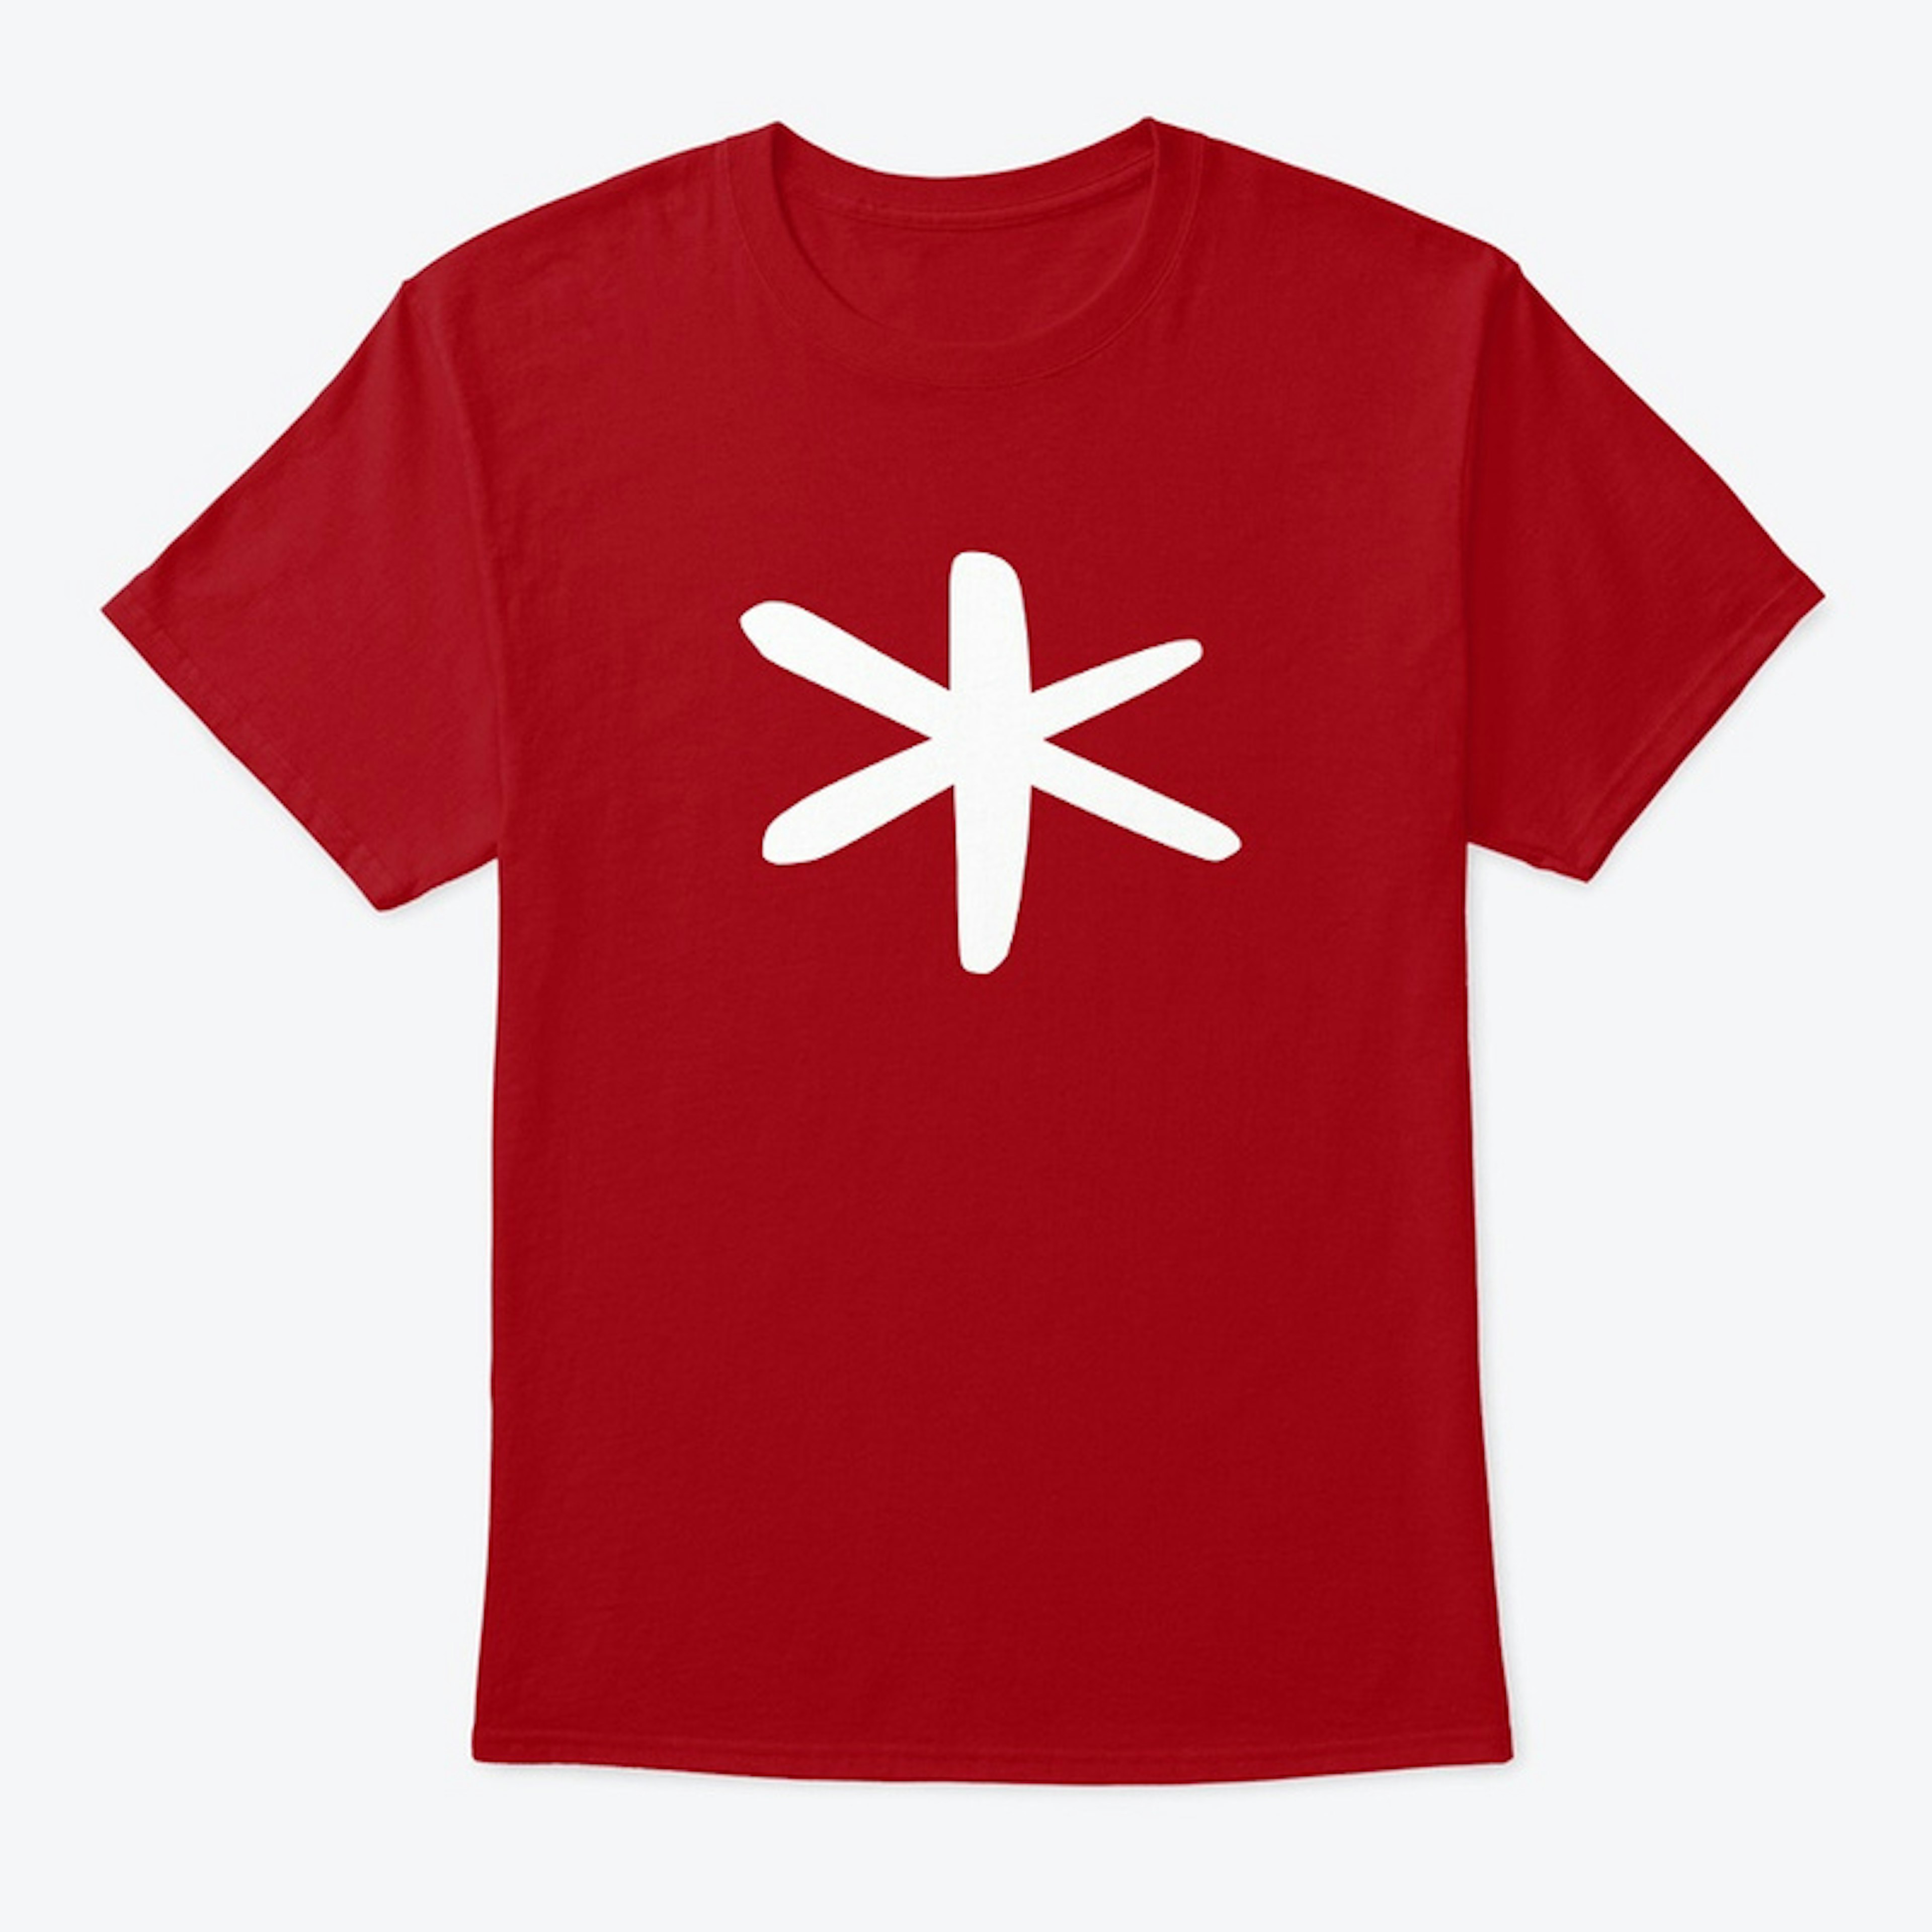 Asterisk T-Shirt